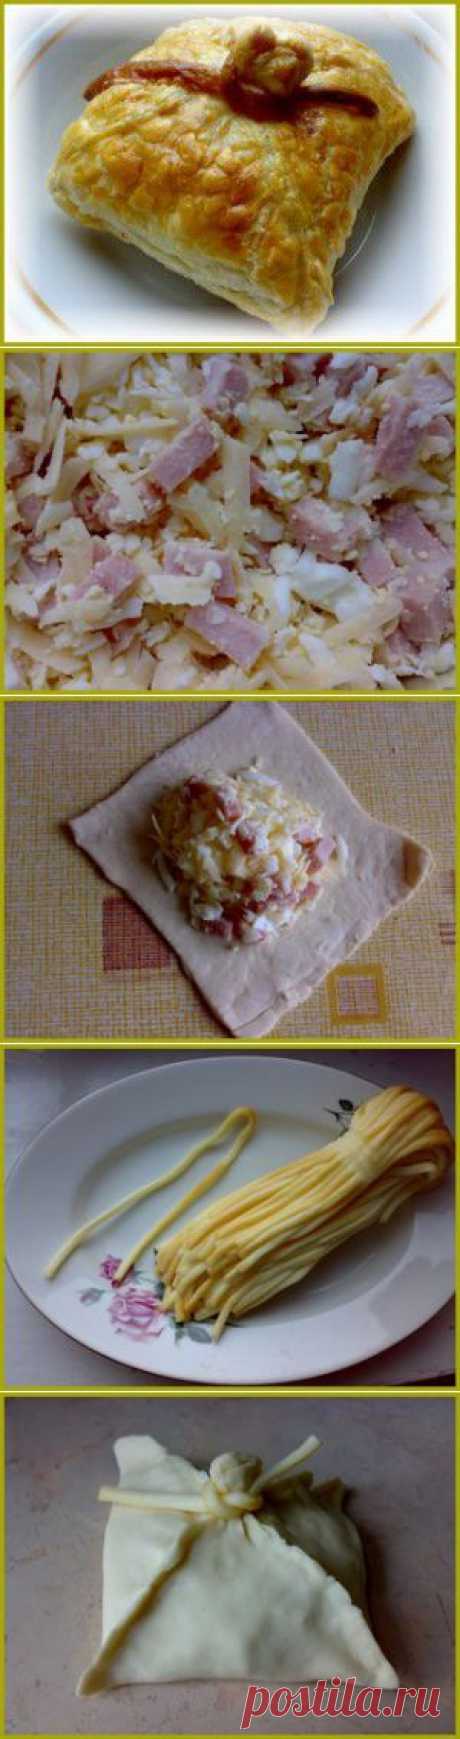 Пирожки из слоеного теста с сыром. | Простые рецепты.